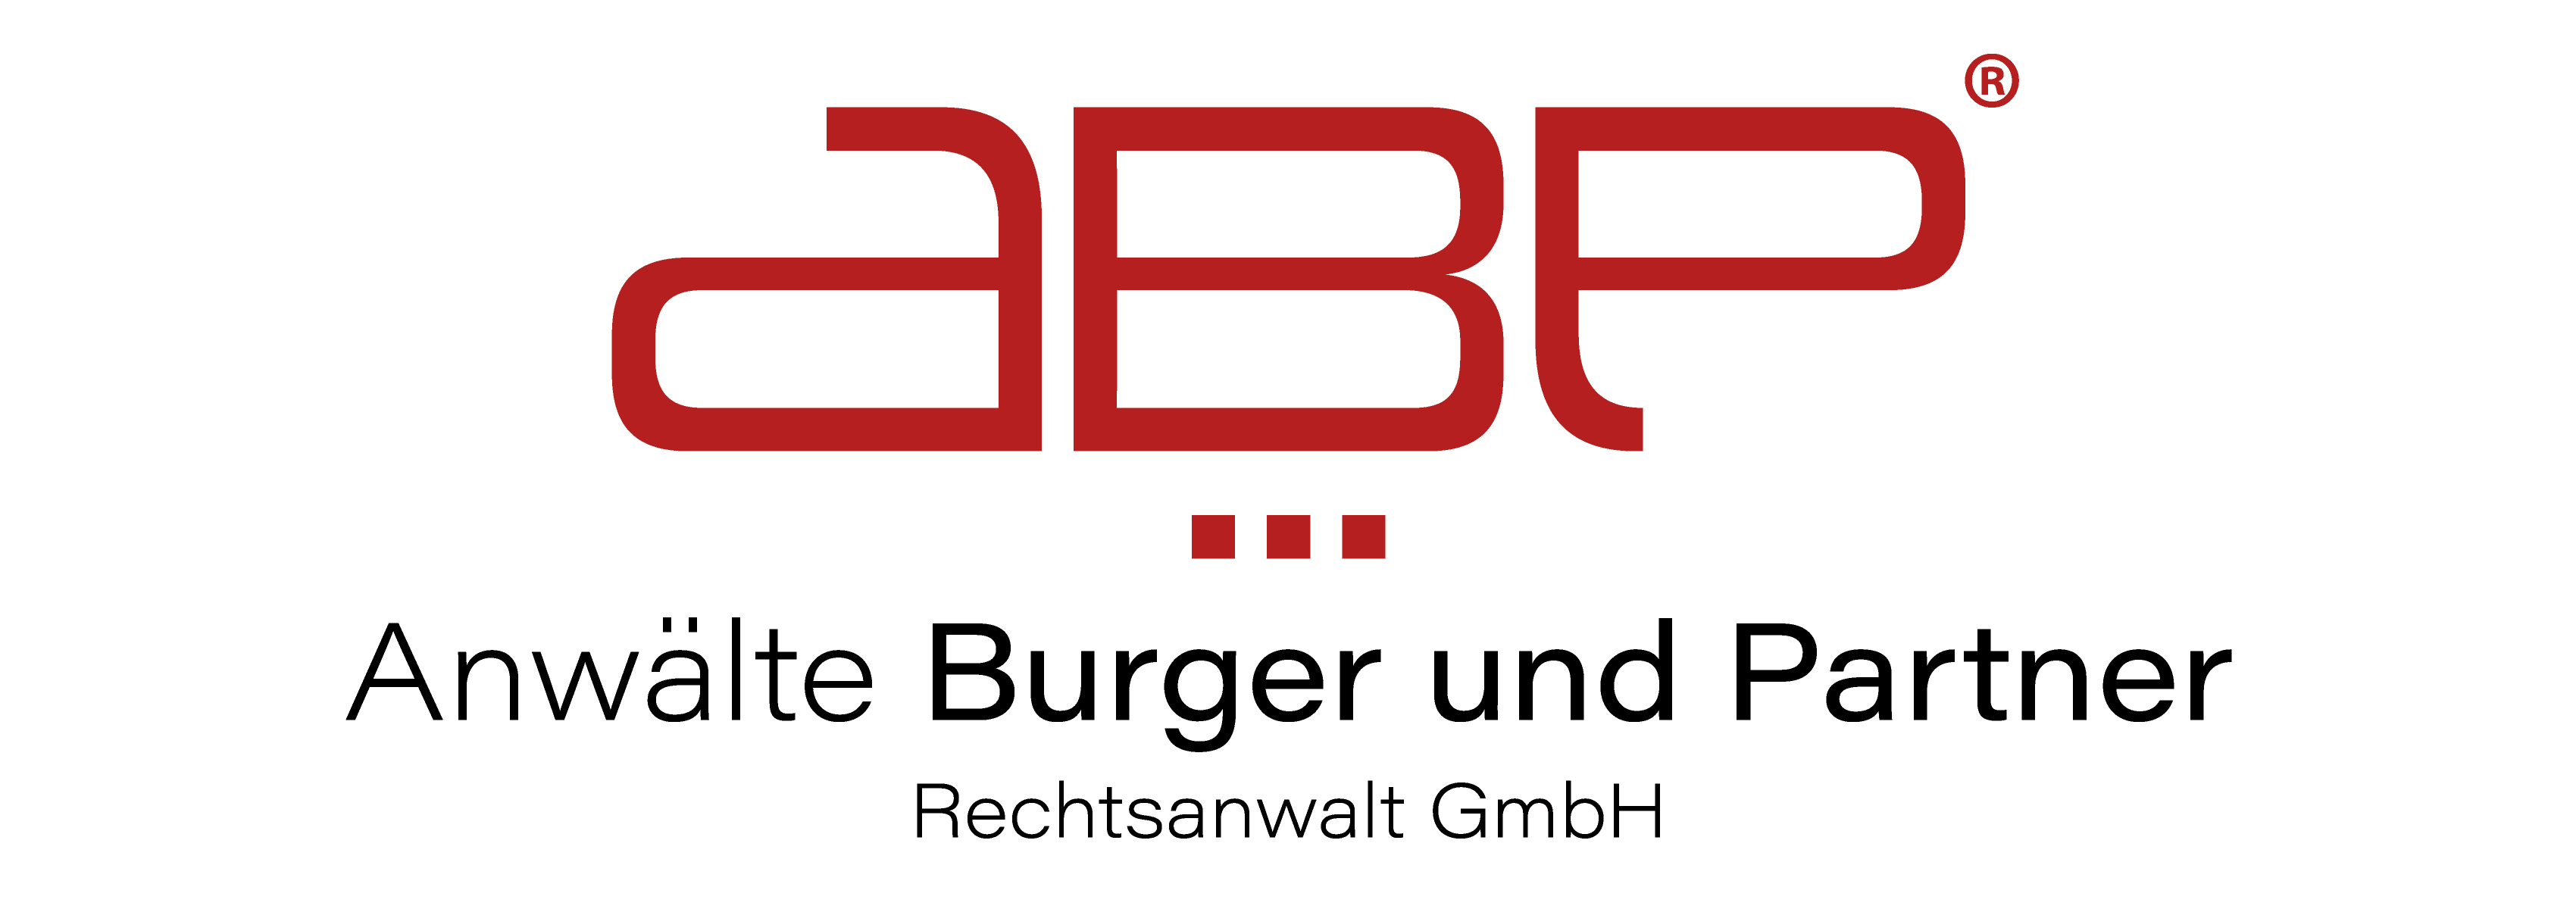 Vorschau - Foto 1 von Anwälte Burger u Partner Rechtsanwalt GmbH